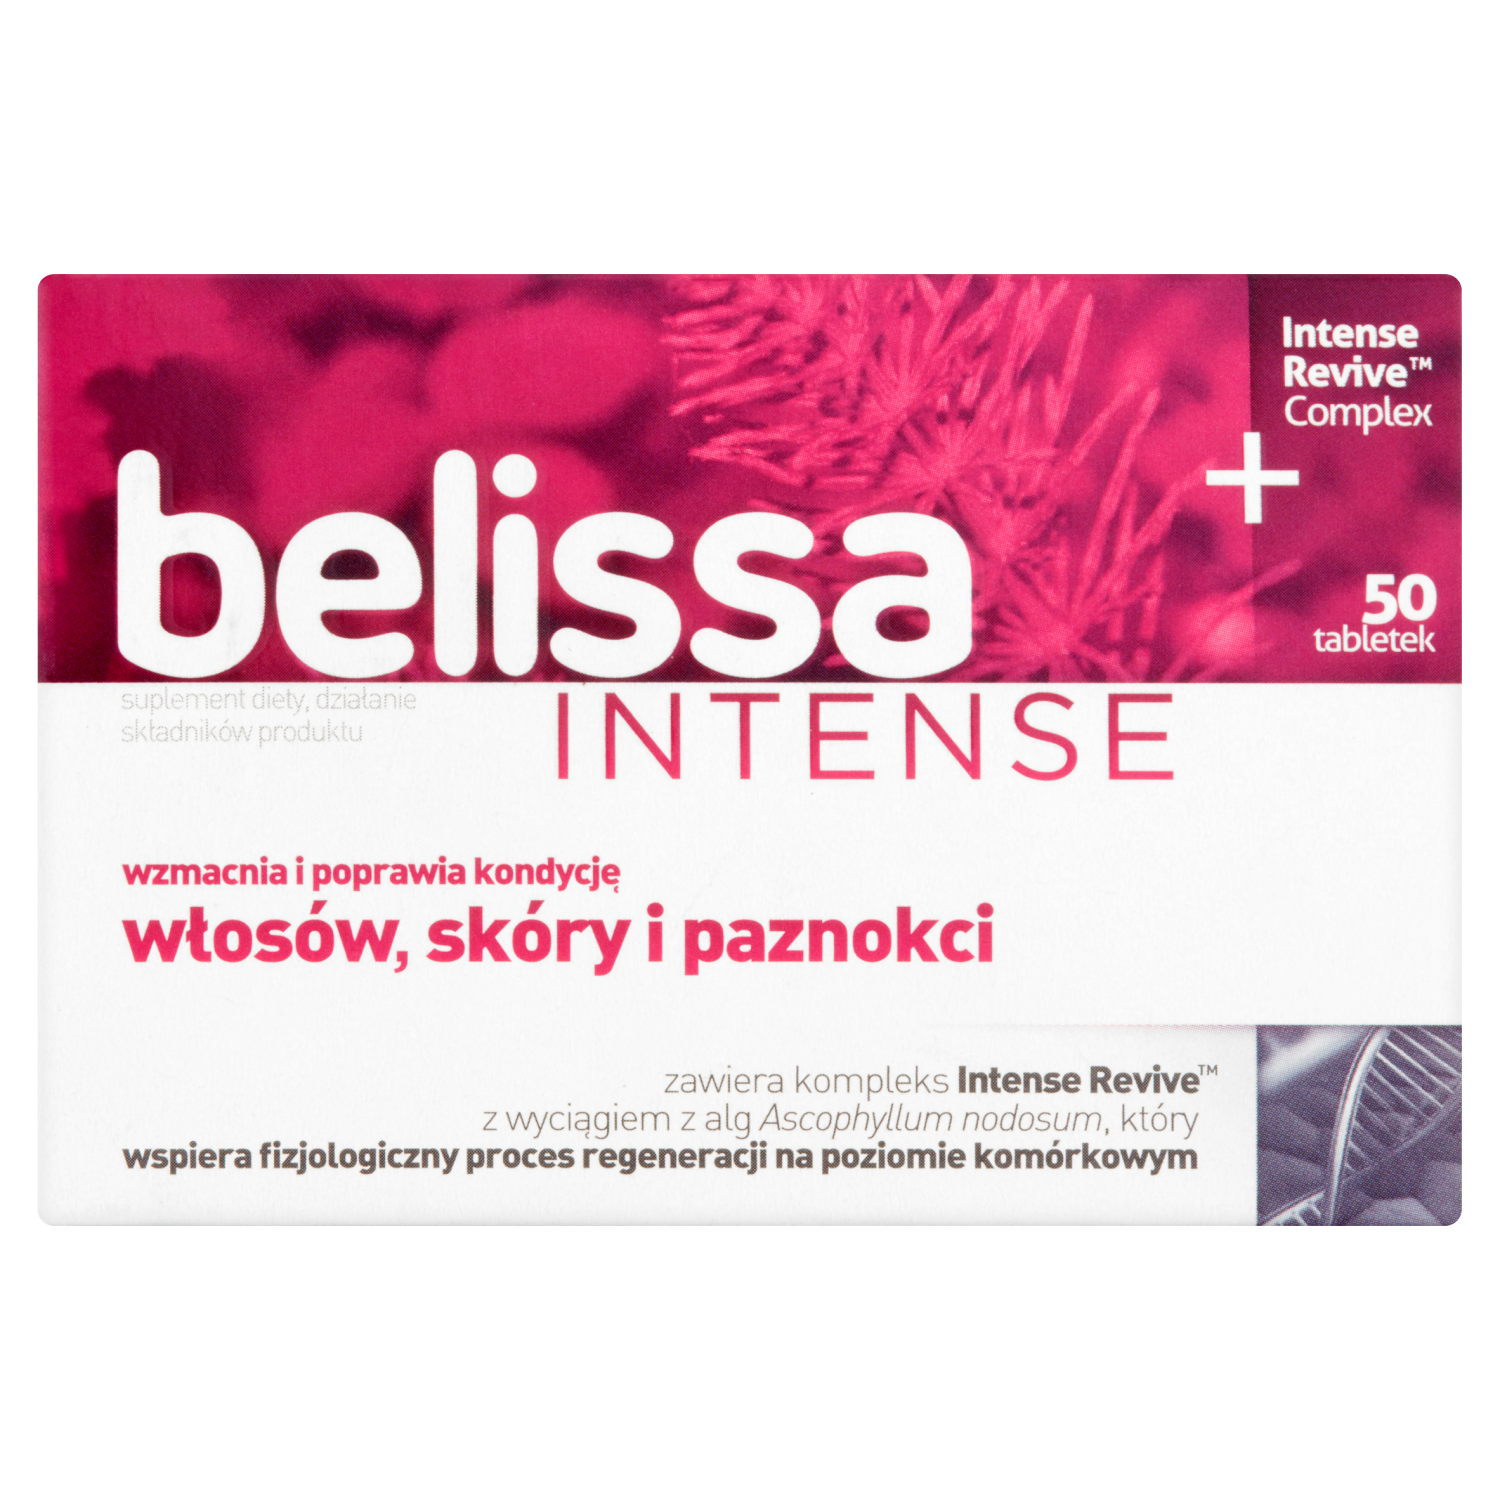 sesja биологически активная добавка 50 таблеток 1 упаковка Belissa Intense биологически активная добавка, 50 таблеток/1 упаковка